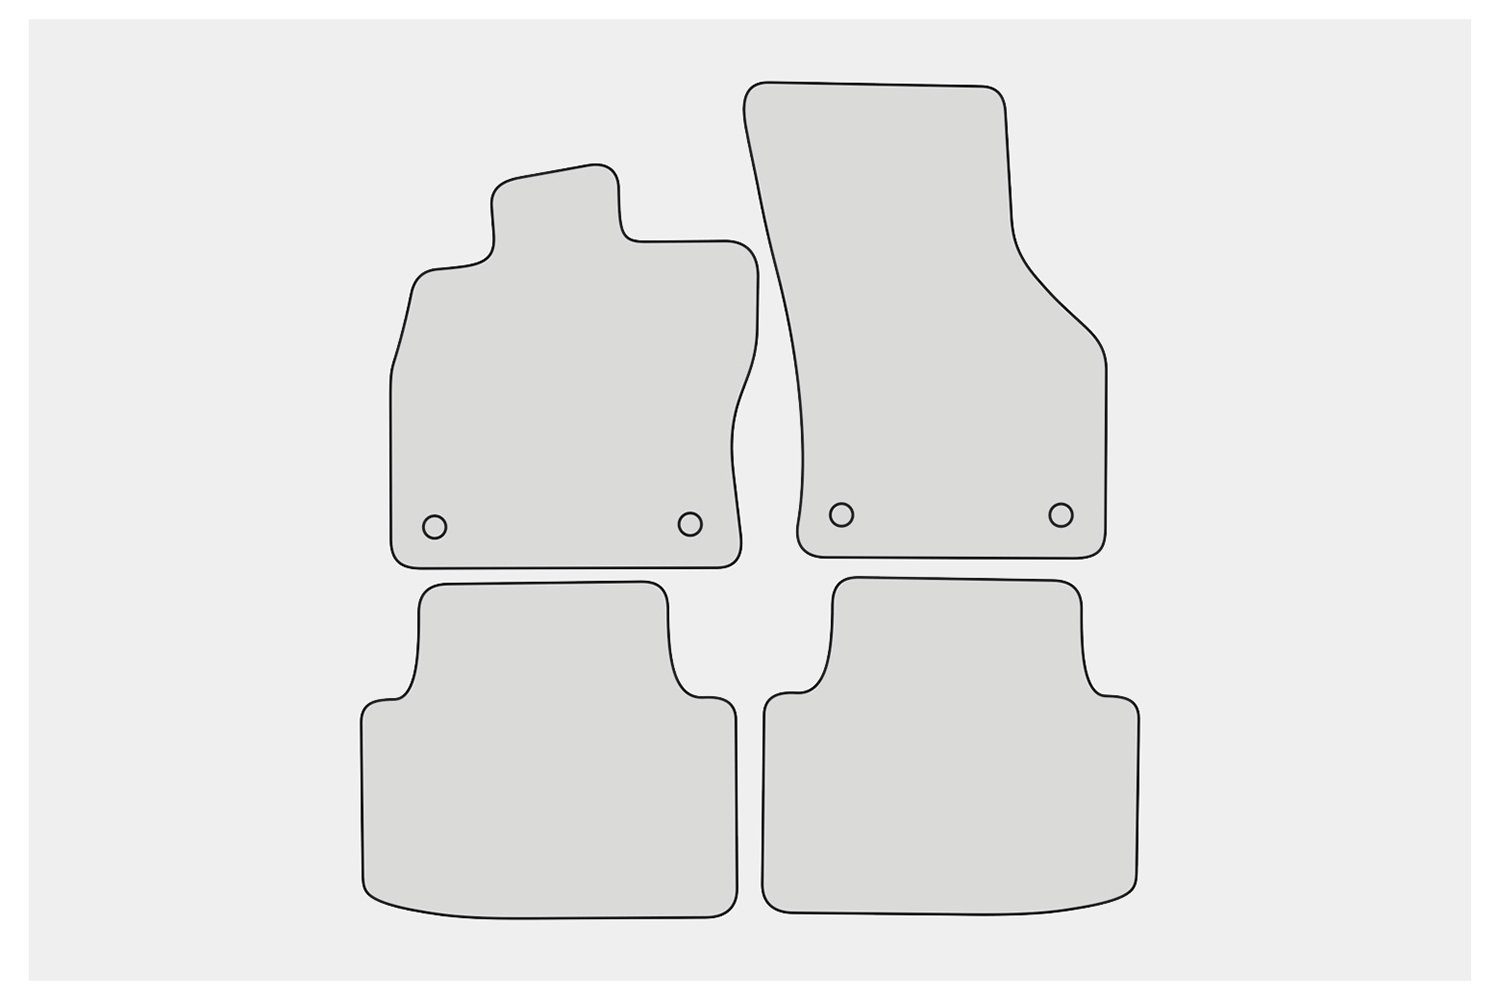 EF210 teileplus24 Fußmatten mit 2014- B8 kompatibel Set Velours Passat 3G VW Auto-Fußmatten